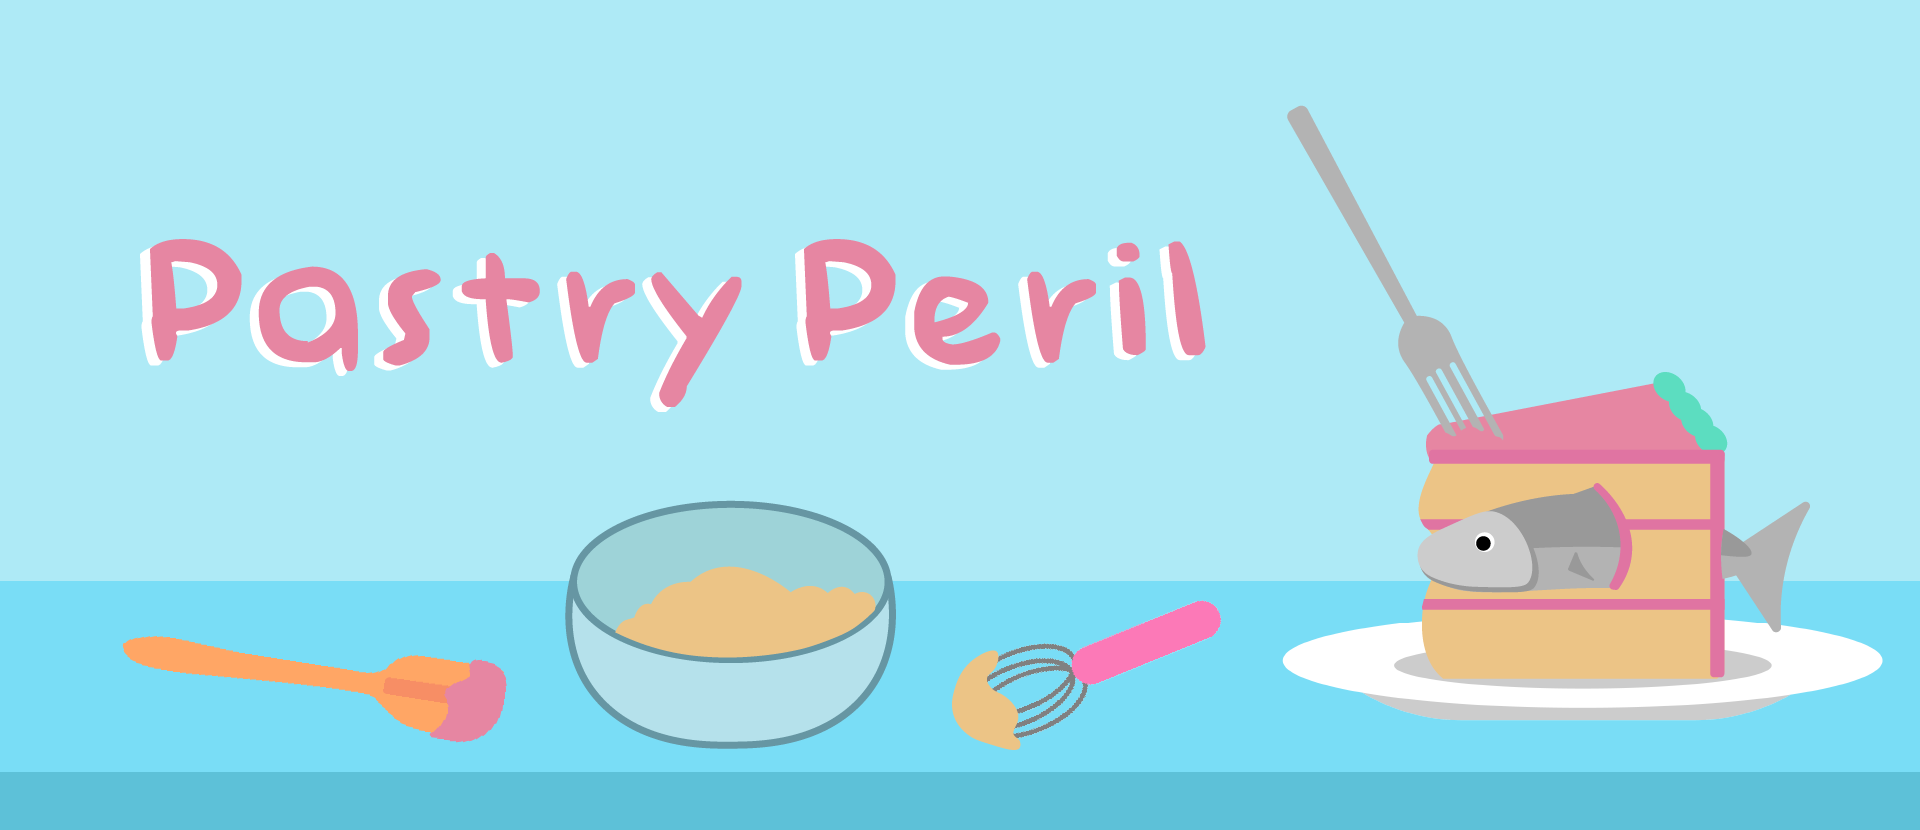 Pastry Peril 1.1.1